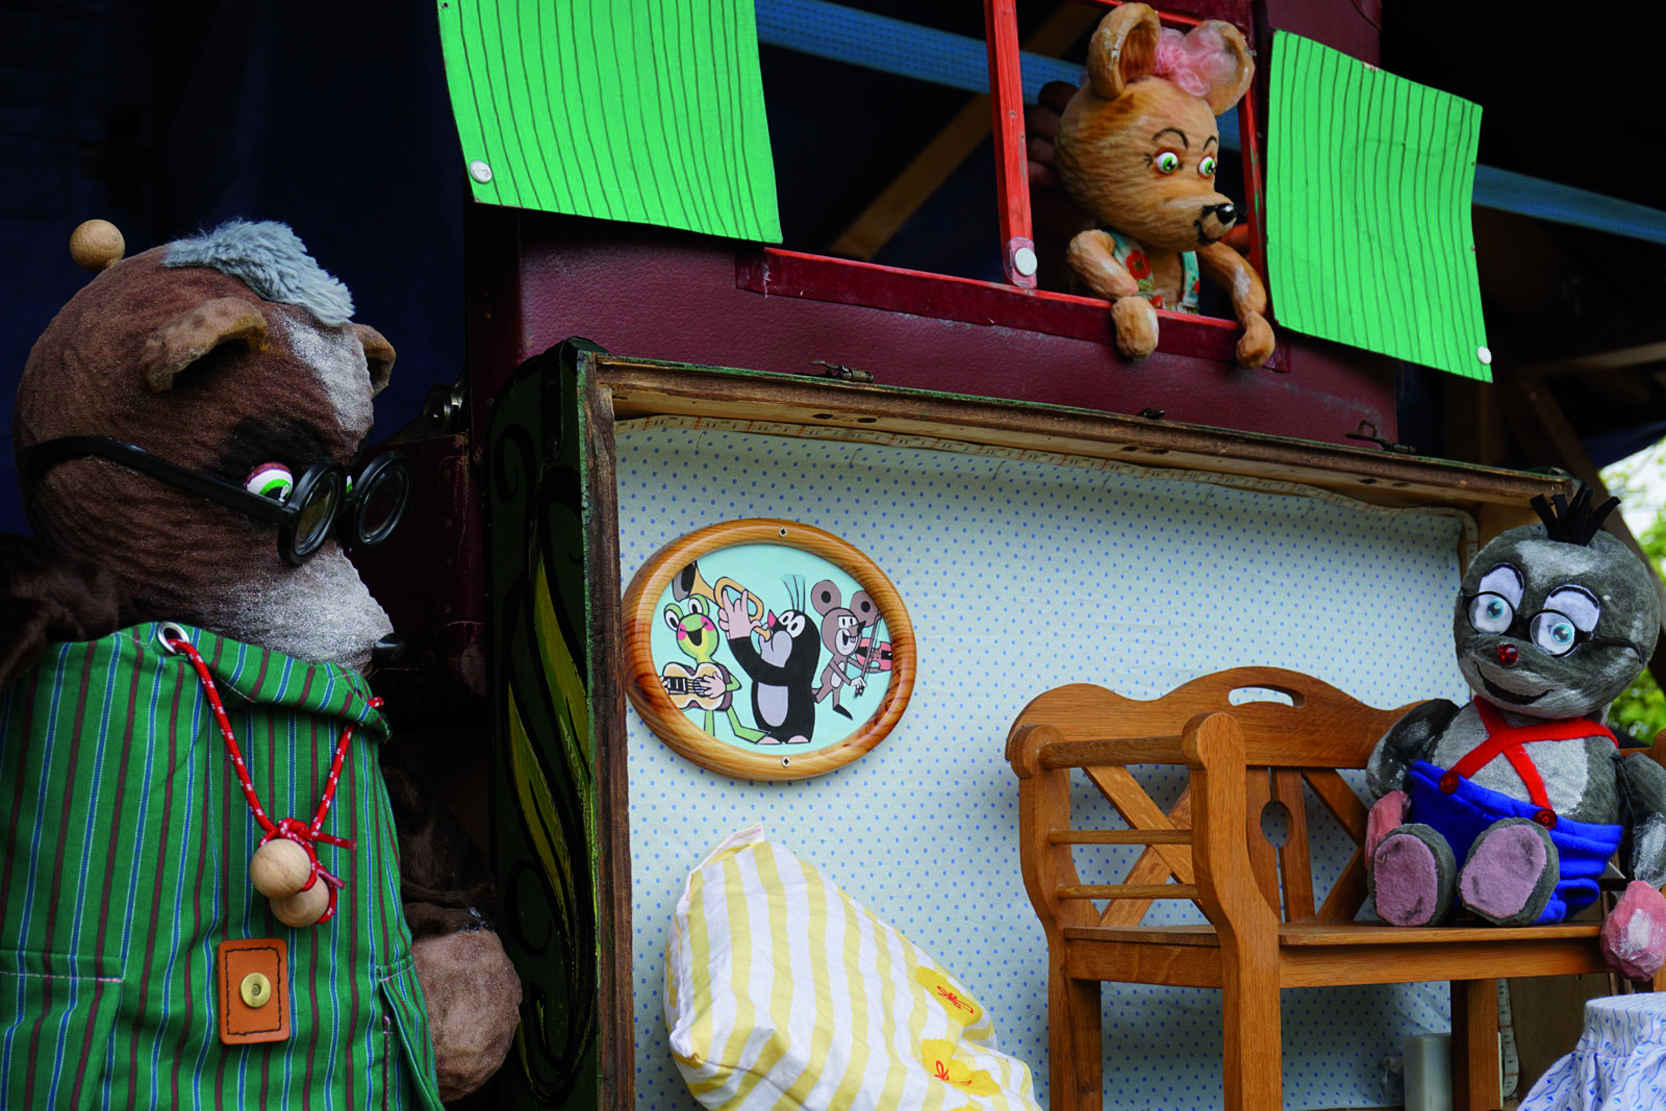 Foto: Puppenspiel “Der Maulwurf und seine Freunde”. Fotoautor: Figurentheater Schnuppe, Gingst